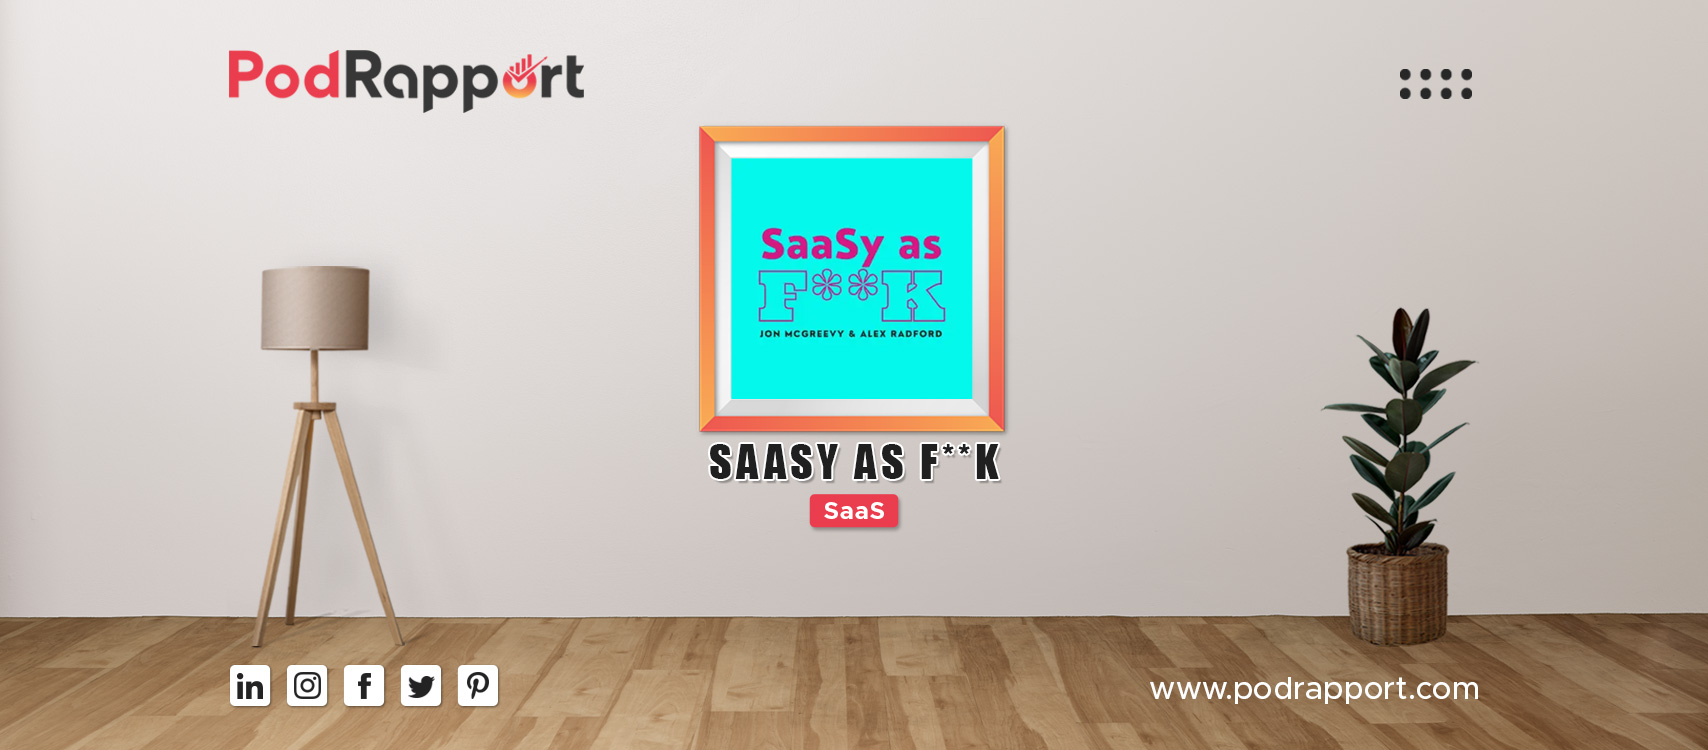 SaaSy as F**k